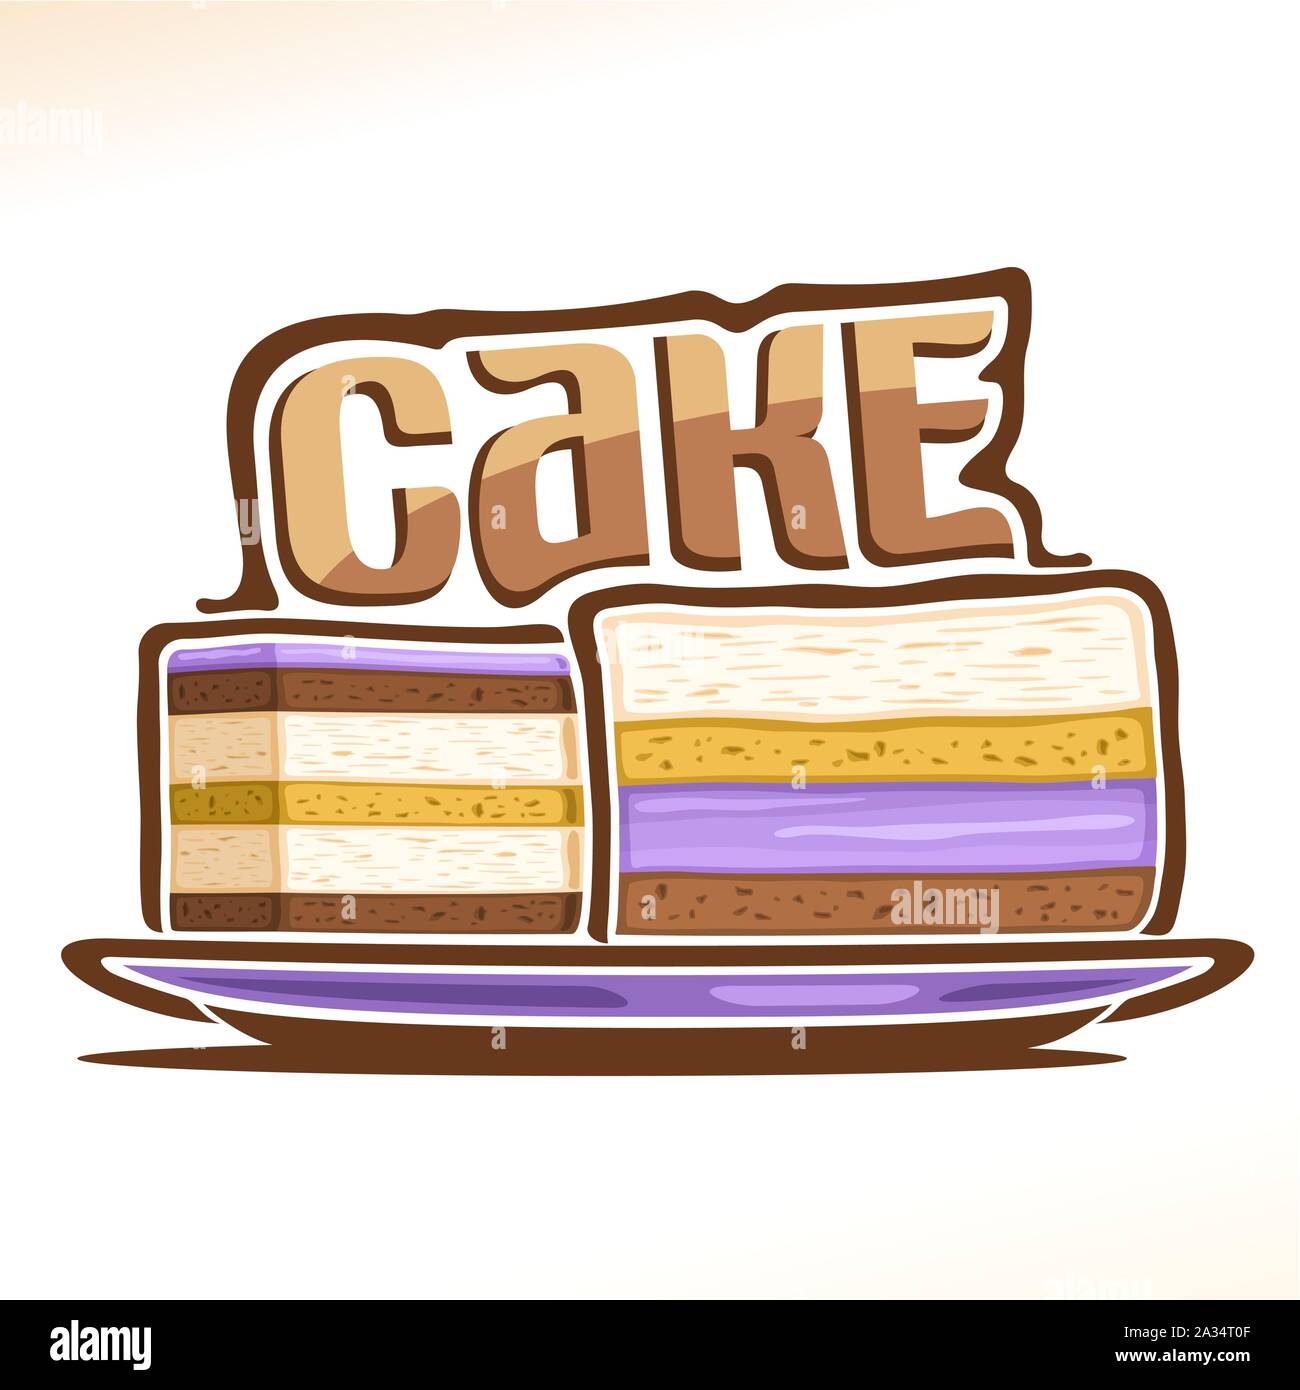 Vektor logo für Kuchen, Poster mit zwei geschnittene Stücke Geburtstag Kuchen auf dem Teller und ursprünglichen Font für Wort Kuchen, Illustration von Süßwaren für Pati Stock Vektor